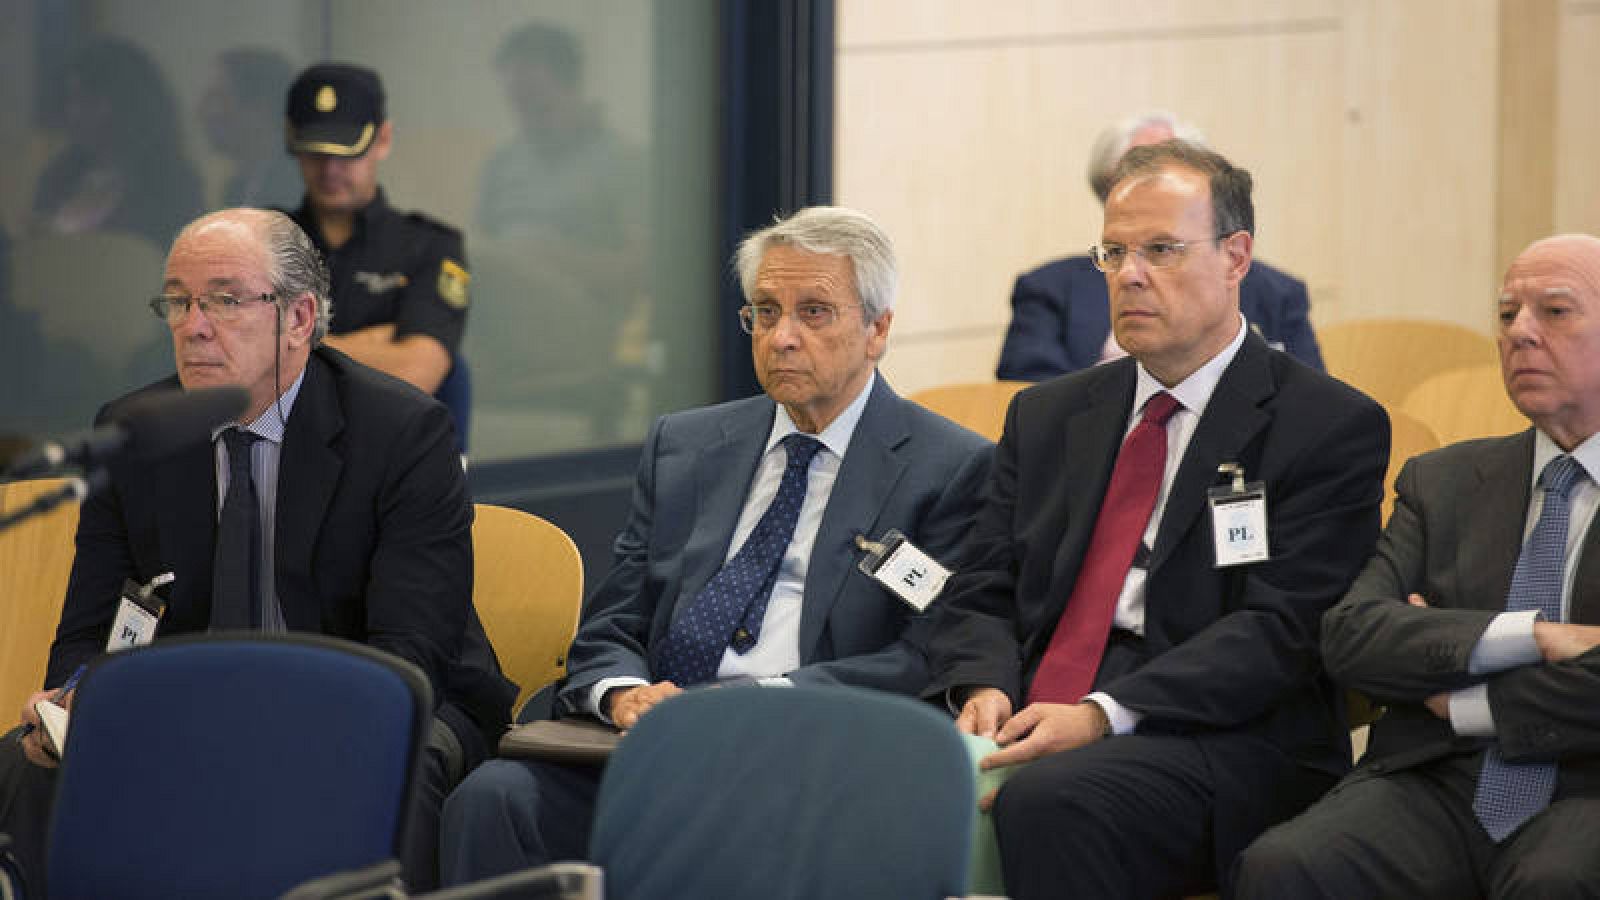 Los exdirectivos de NCG Banco, Gregorio Gorriarán, Julio Fernández Gayoso, José Luis Pego y Óscar Rodríguez Estrada durante el juicio contra ellos en la Audiencia Nacional en 2015.